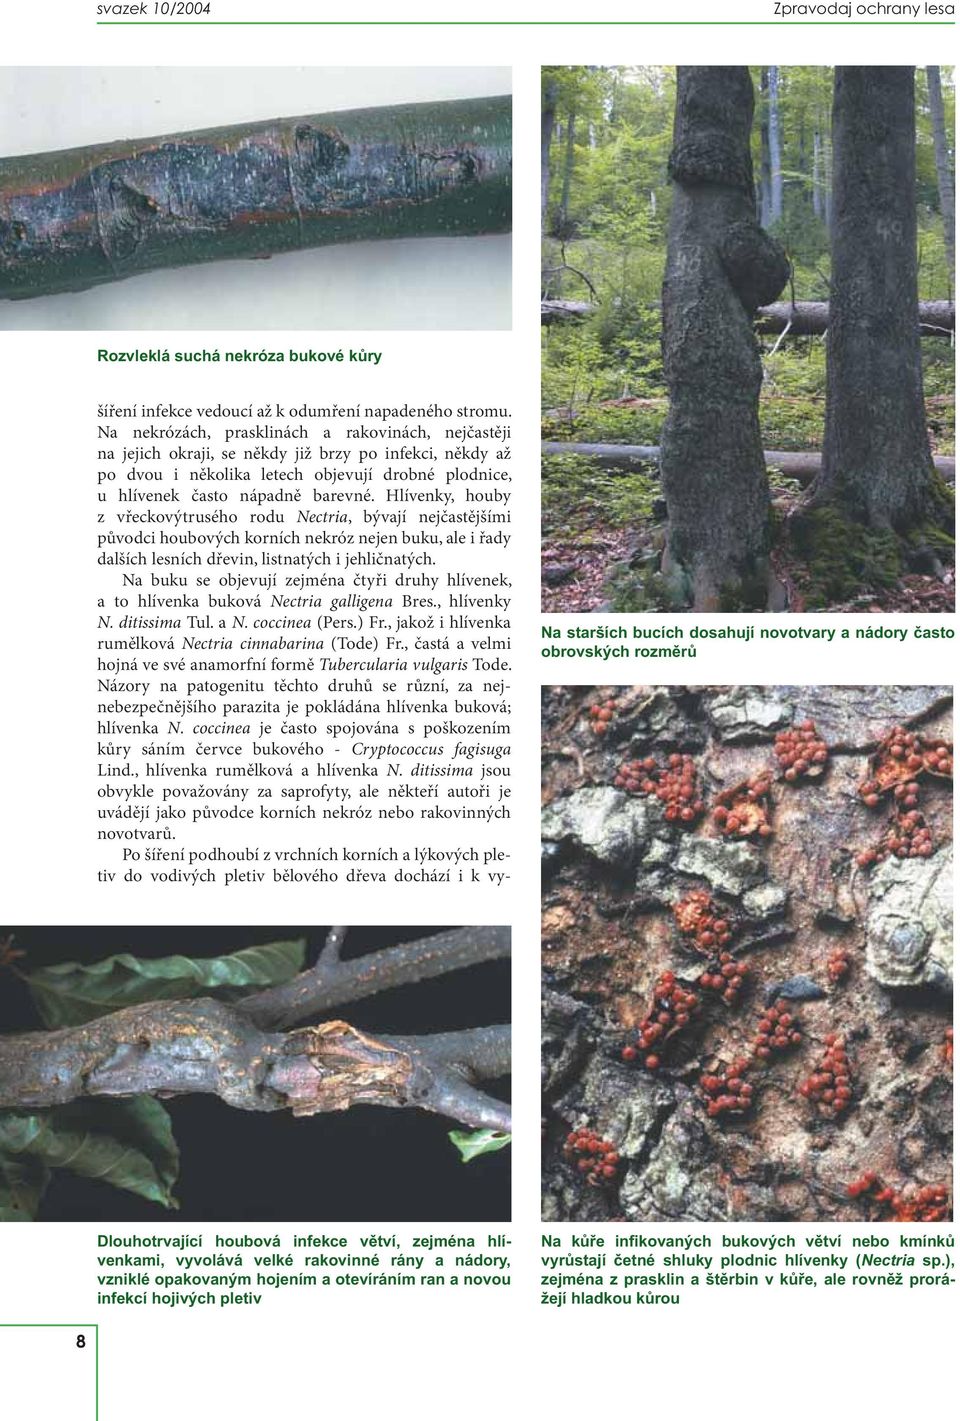 Hlívenky, houby z vřeckovýtrusého rodu Nectria, bývají nejčastějšími původci houbových korních nekróz nejen buku, ale i řady dalších lesních dřevin, listnatých i jehličnatých.